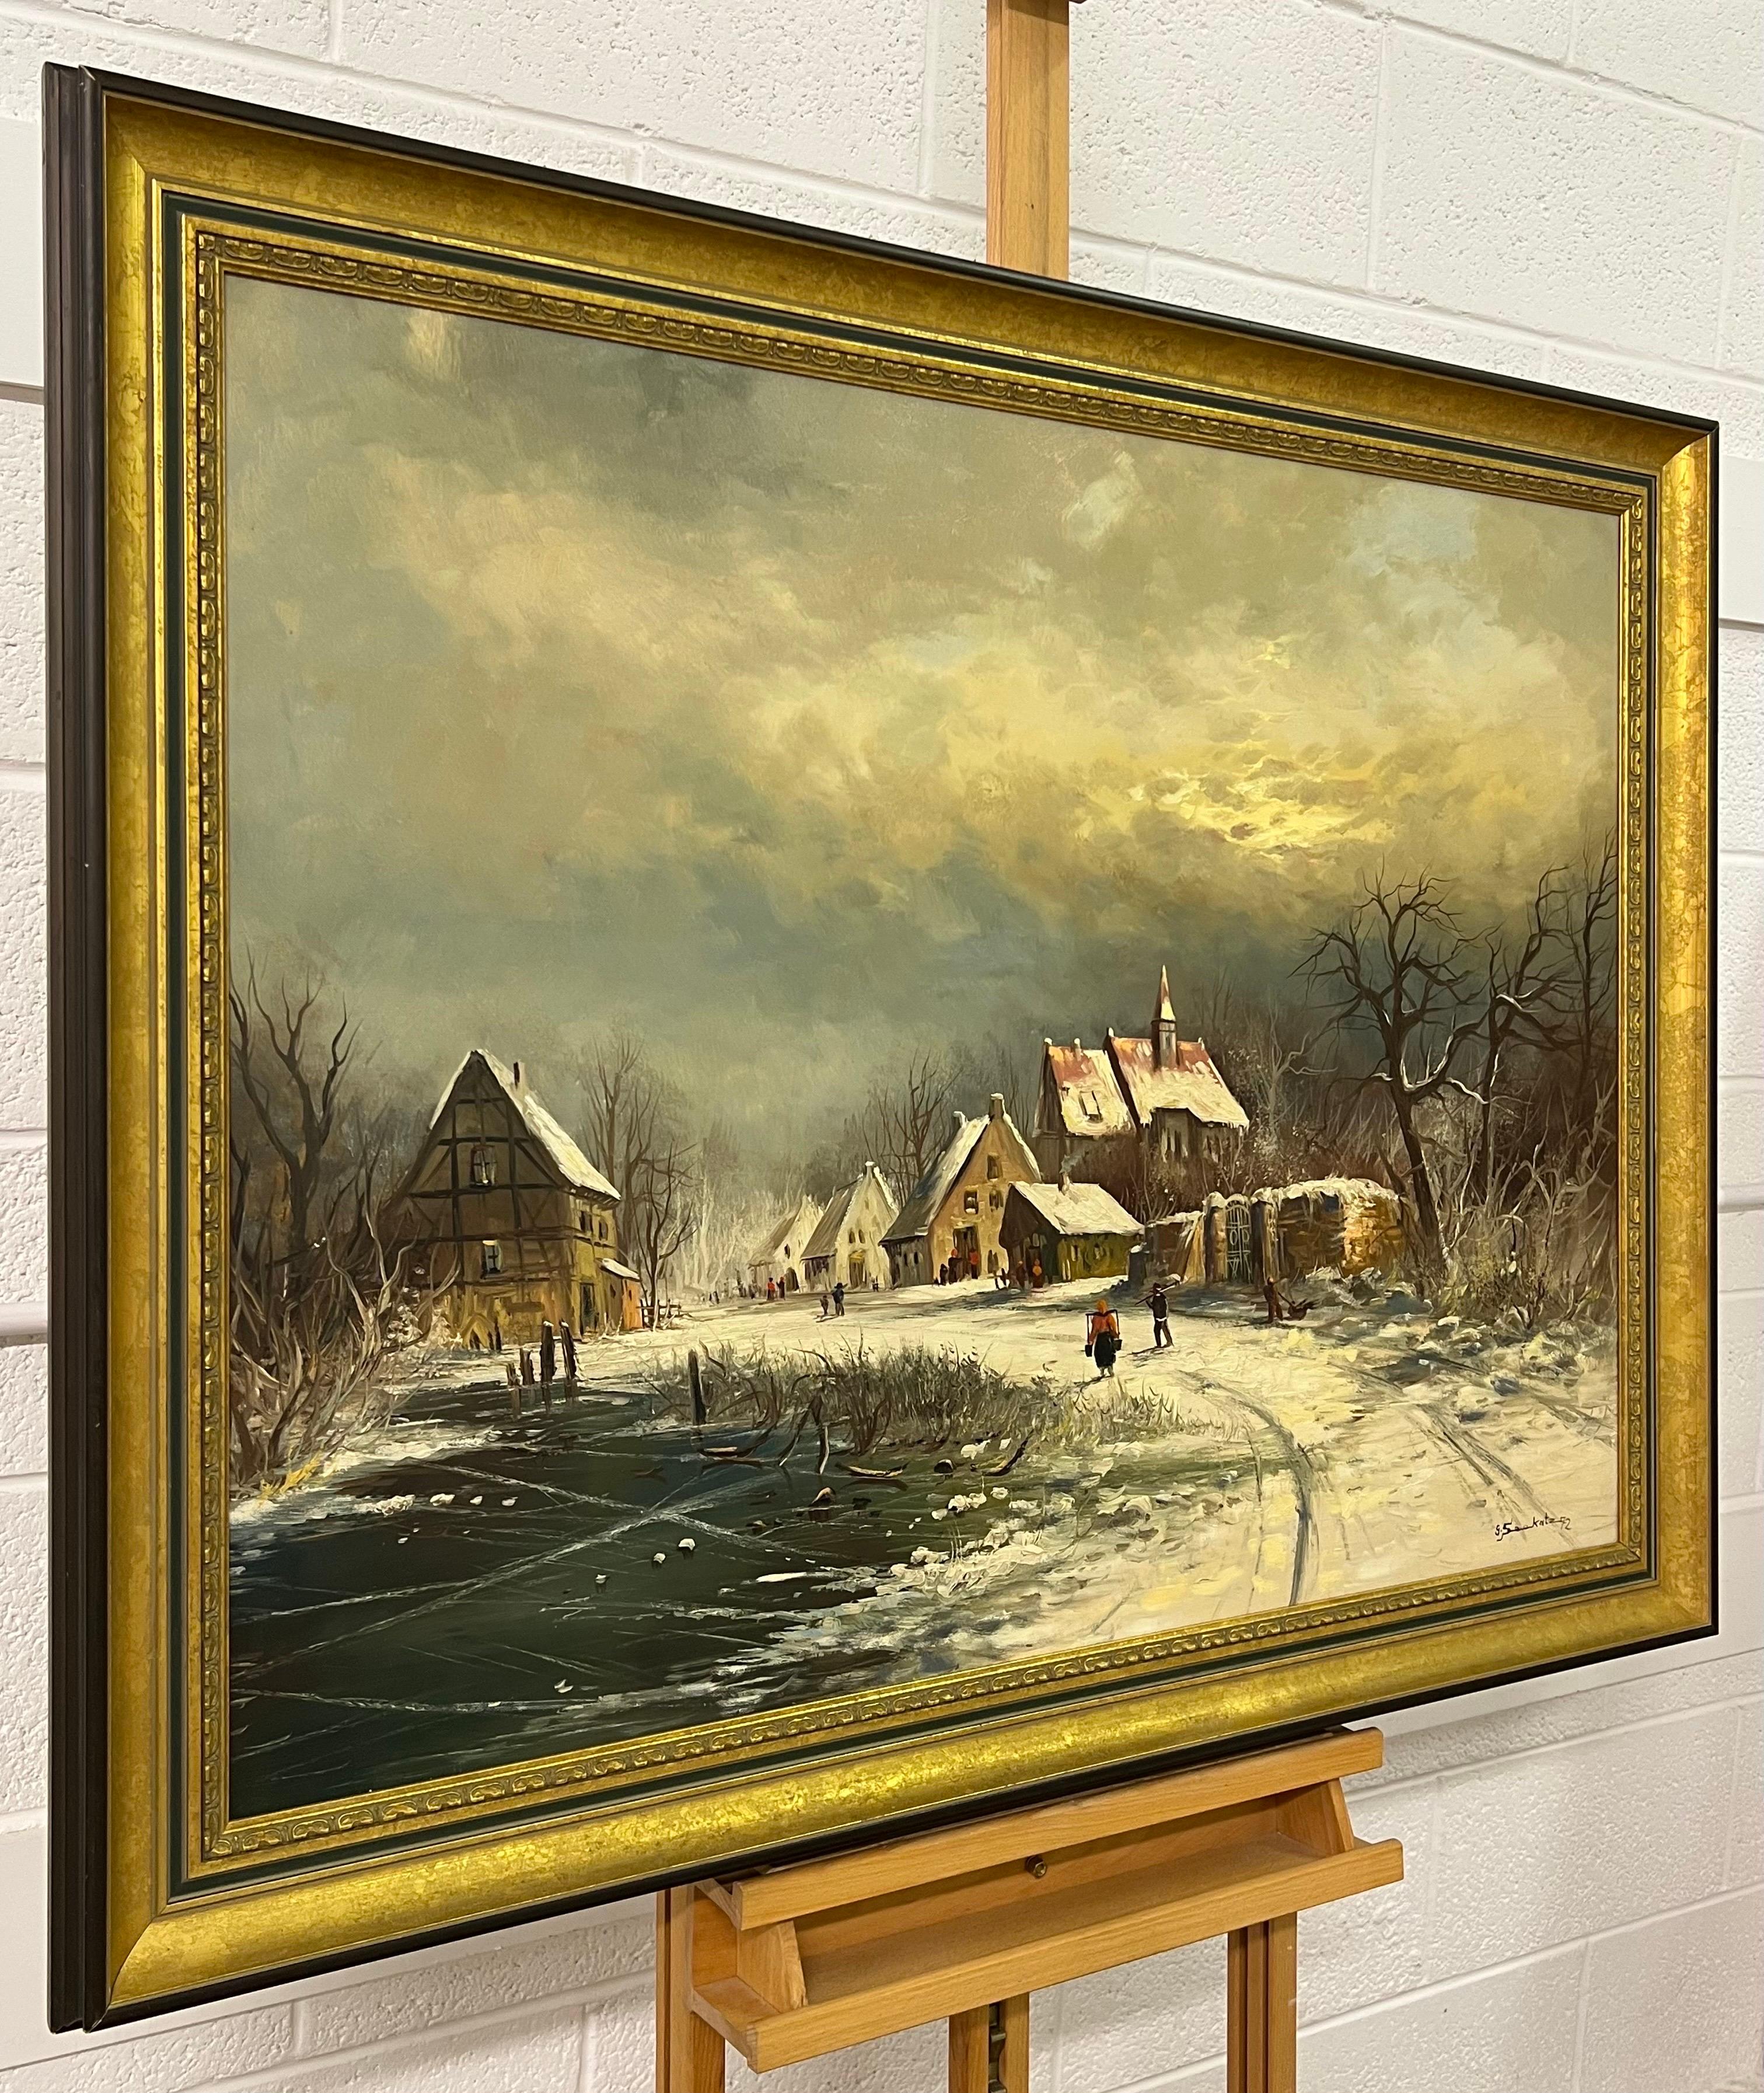 European Village in Winter Snow with Figures & Frozen Pond by German Artist - Painting by Gunter Seekatz